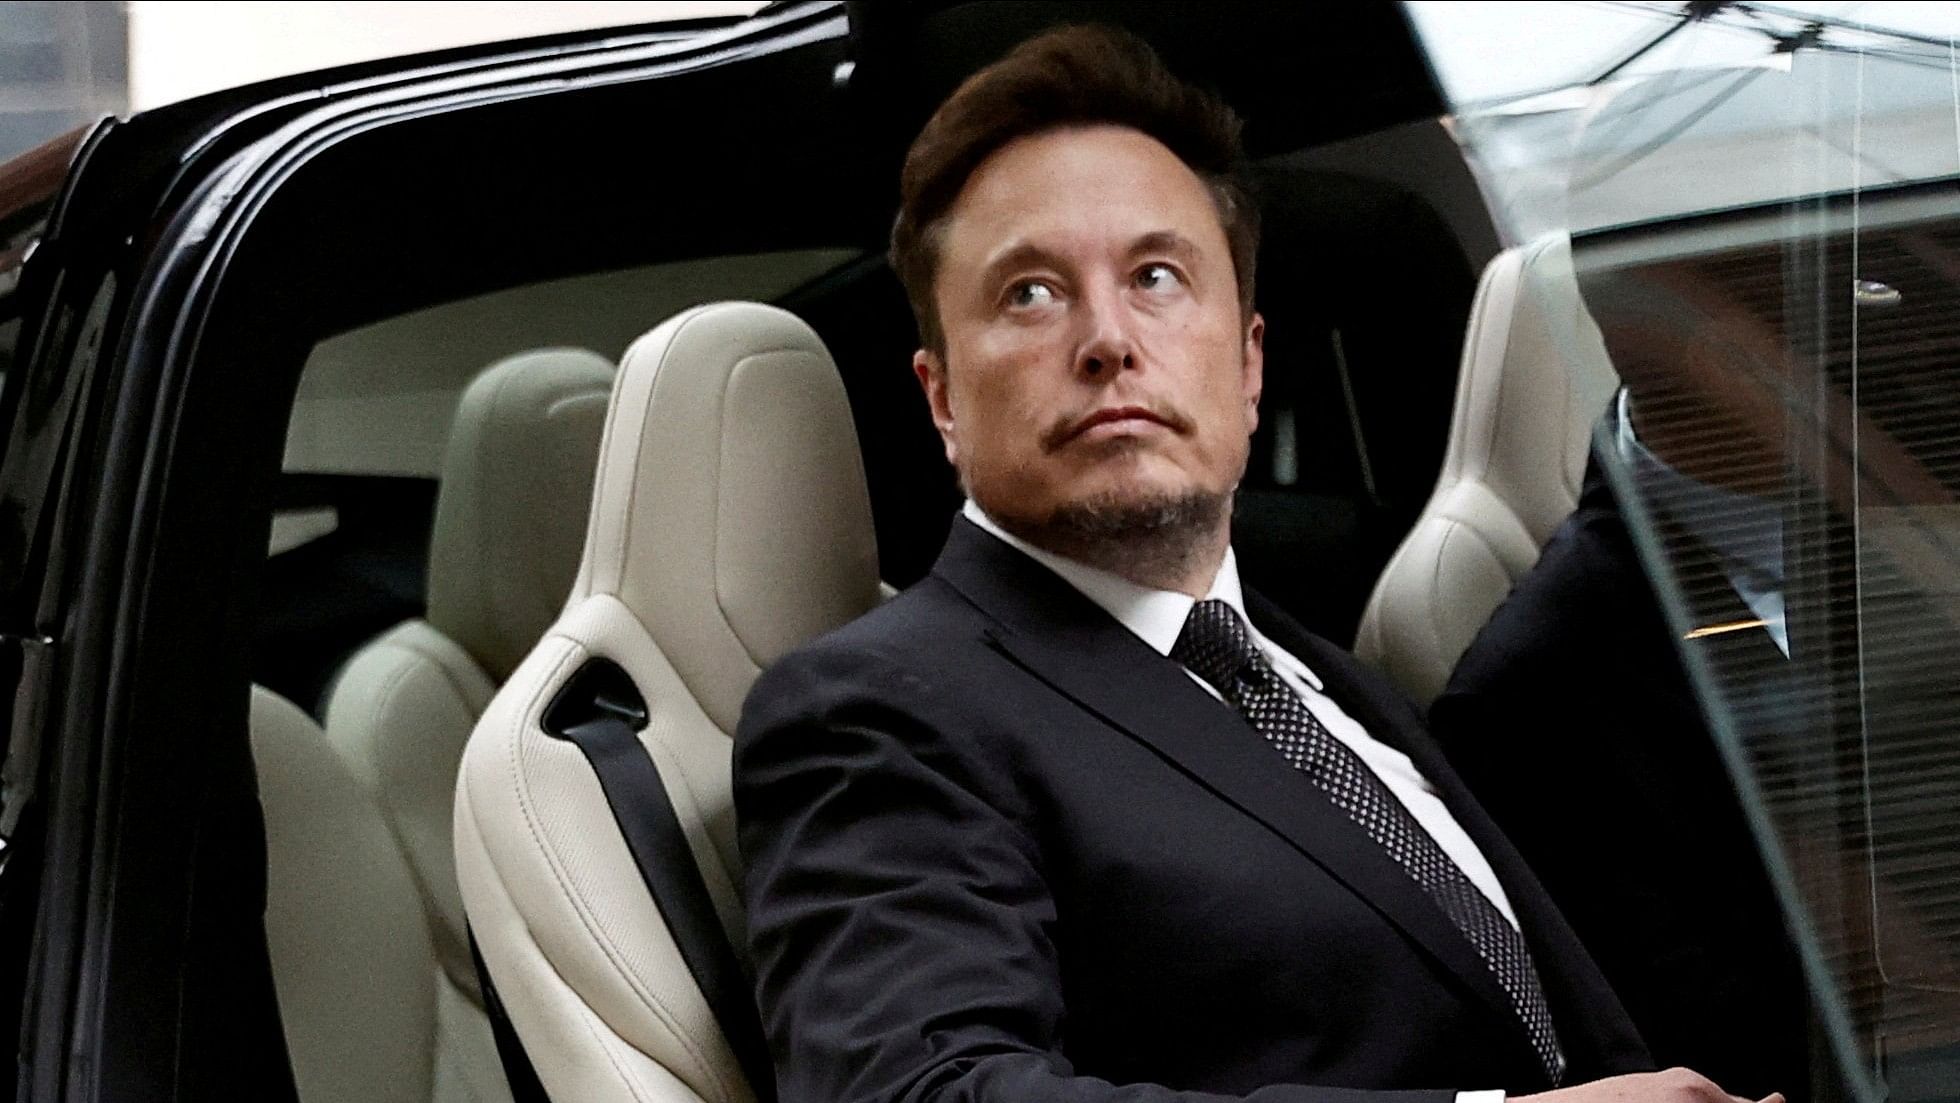 <div class="paragraphs"><p>Tesla Chief Executive Officer Elon Musk</p></div>